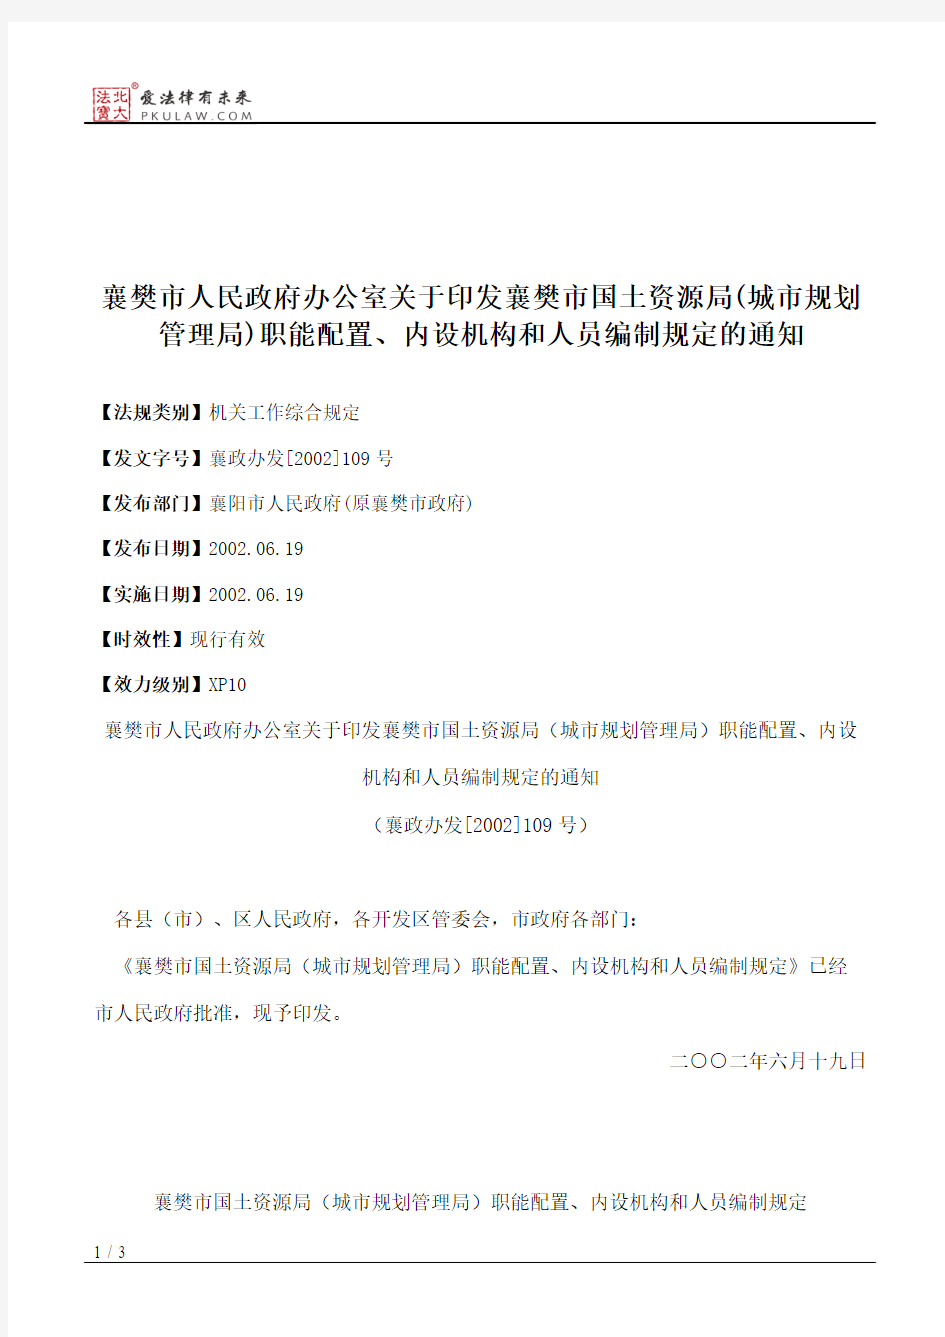 襄樊市人民政府办公室关于印发襄樊市国土资源局(城市规划管理局)